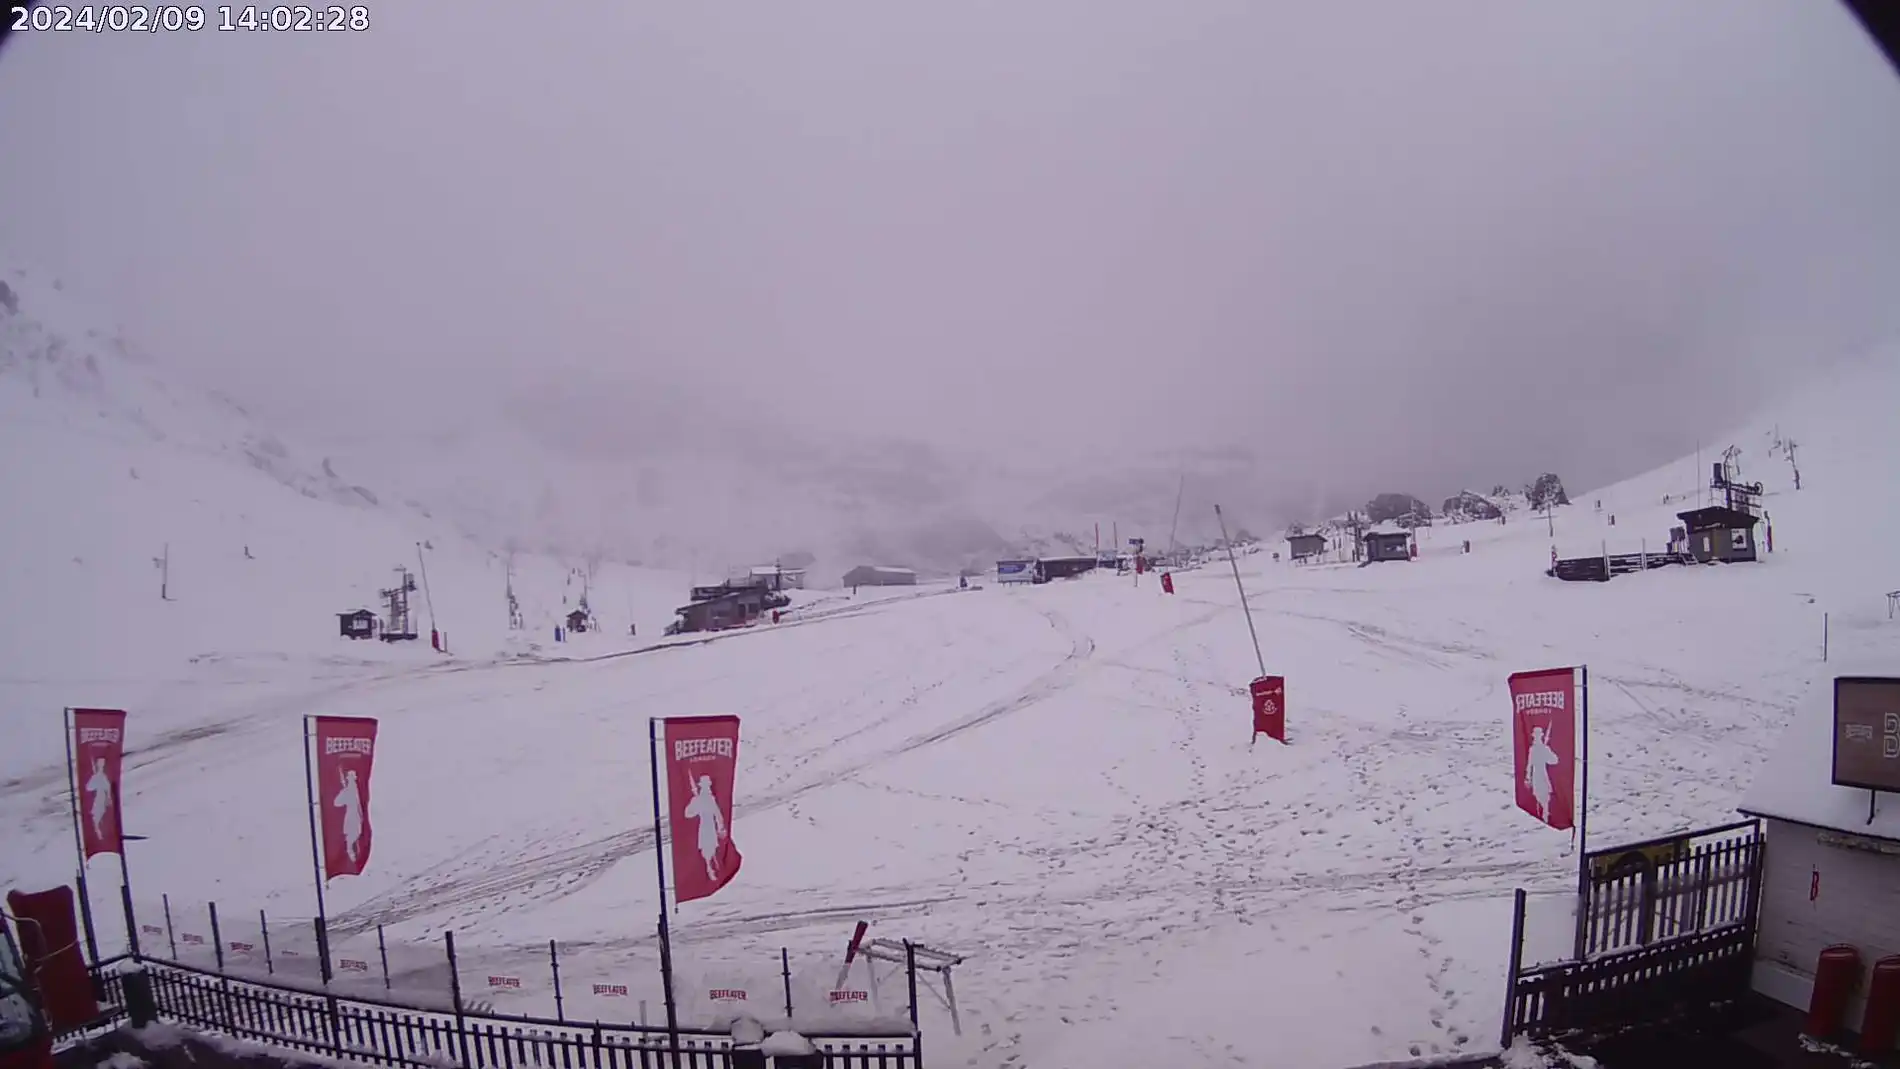 La nieve vuelve al Pirineo tras un mes sin precipitaciones